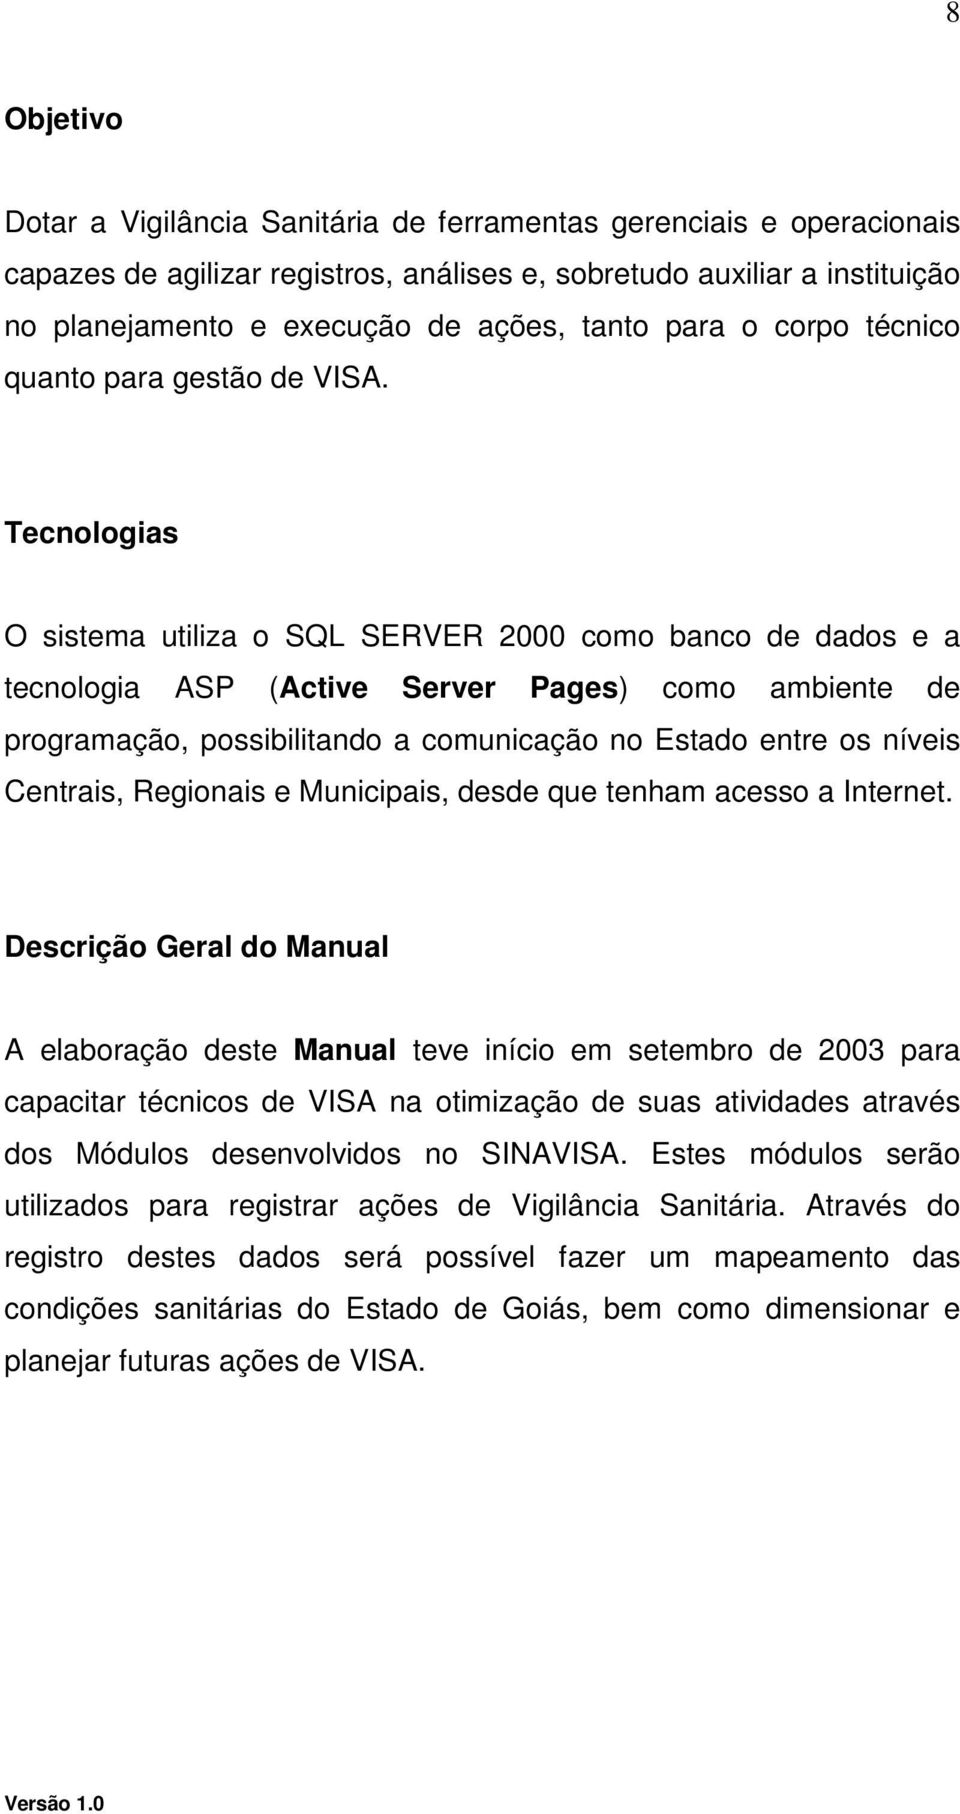 Tecnologias O sistema utiliza o SQL SERVER 2000 como banco de dados e a tecnologia ASP (Active Server Pages) como ambiente de programação, possibilitando a comunicação no Estado entre os níveis